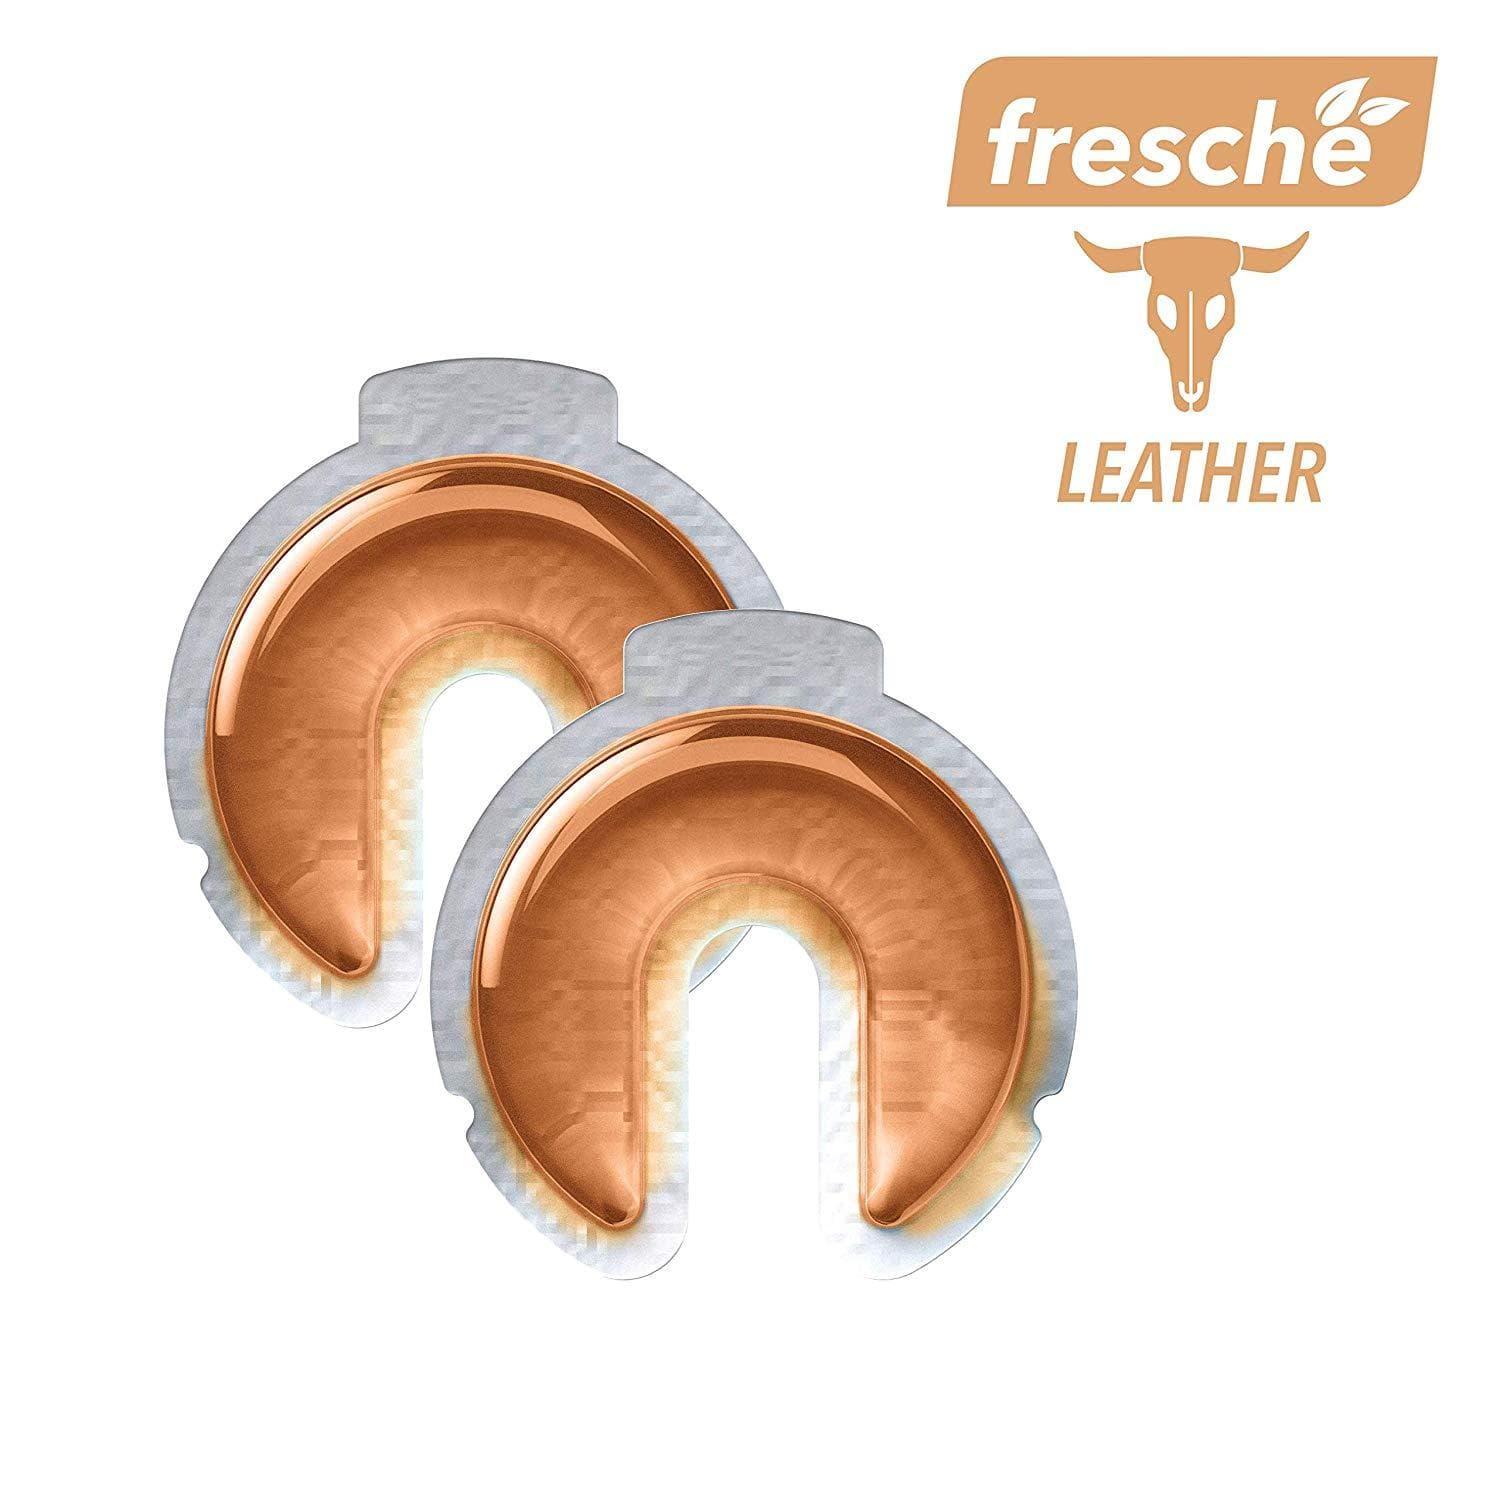 جهاز معطر الهواء لحامل الهاتف Scosche - Air Freshener Refill Cartridges for Fresche Mounts - جلدي